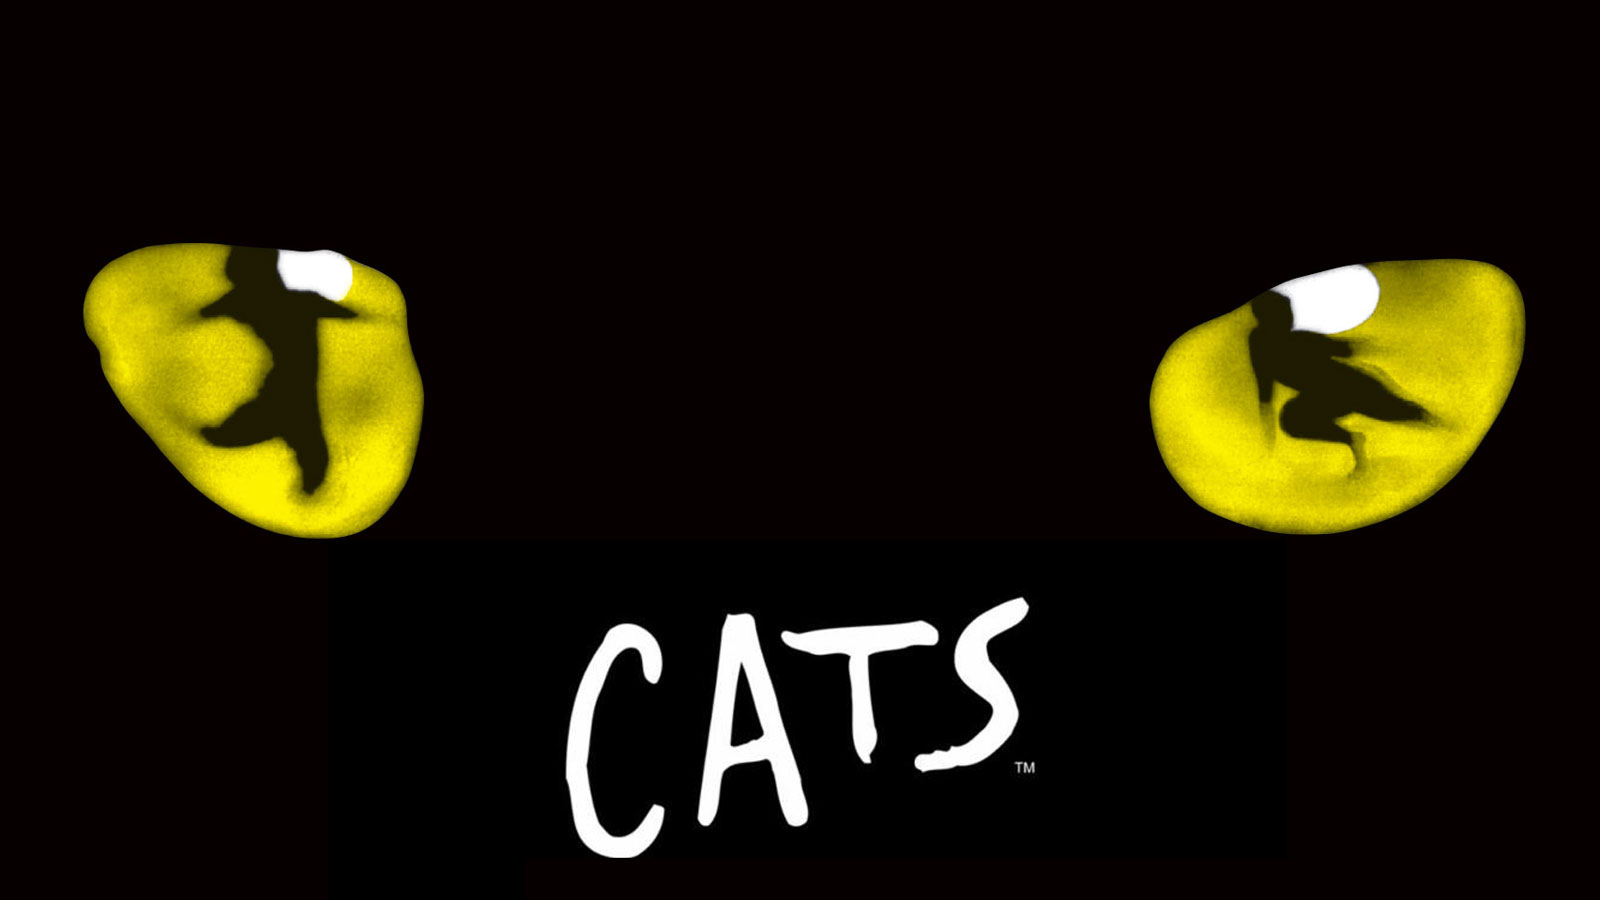 Vở nhạc kịch “CATS” kinh điển của Andrew Lloyd Webber công diễn tại Singapore trong tháng 12 tới